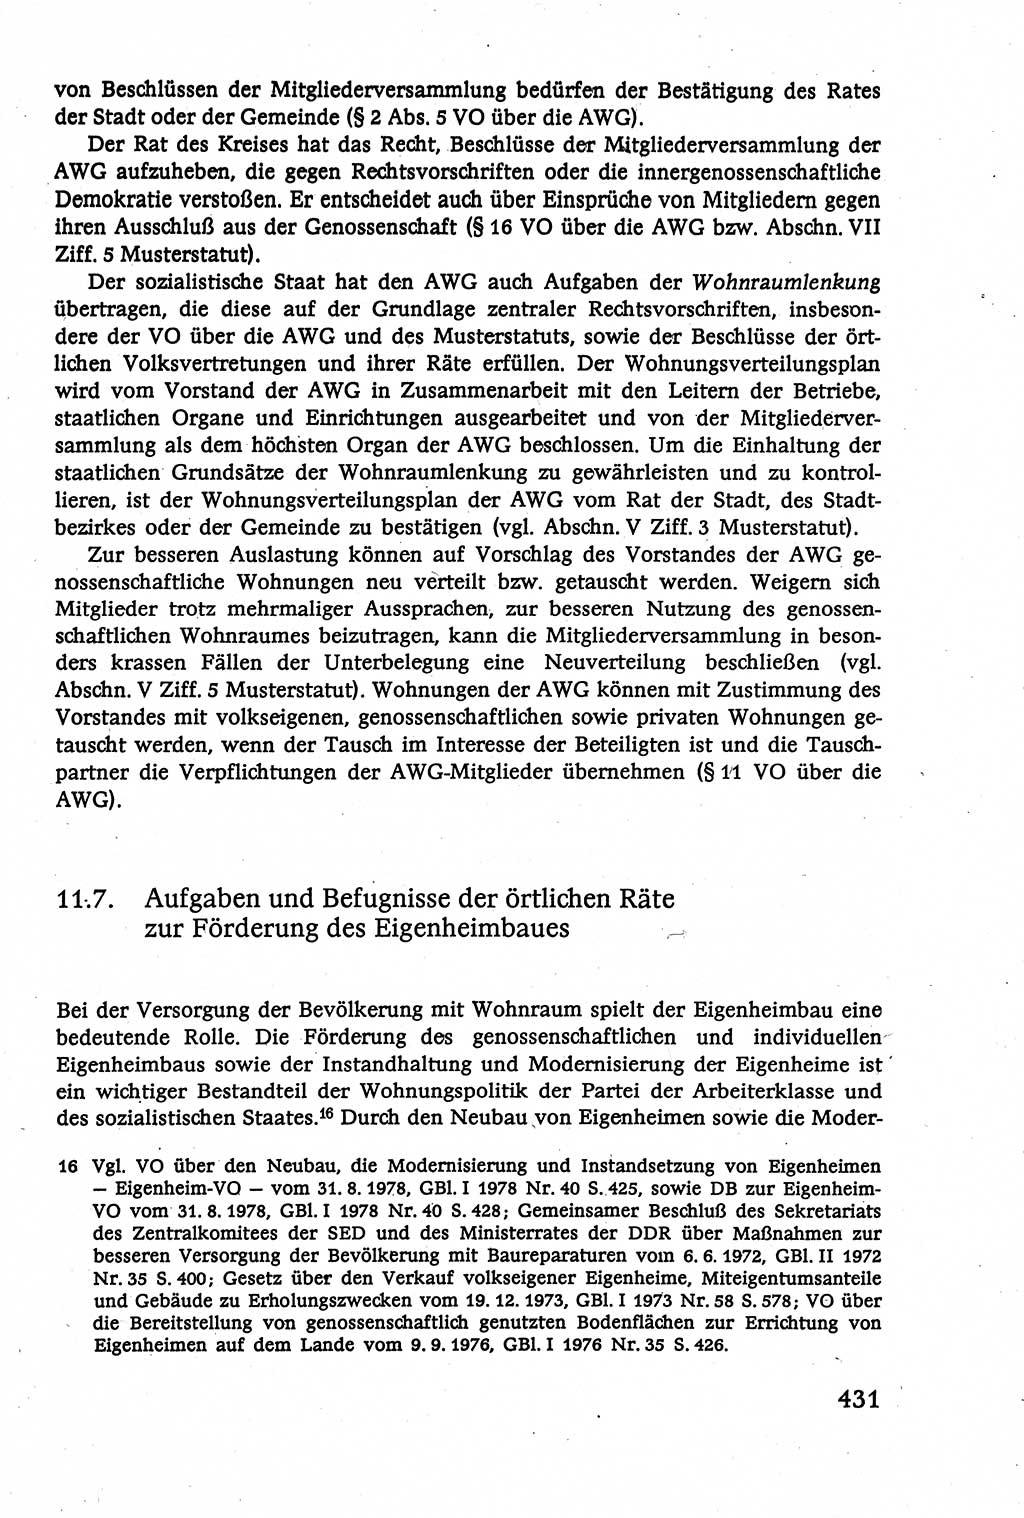 Verwaltungsrecht [Deutsche Demokratische Republik (DDR)], Lehrbuch 1979, Seite 431 (Verw.-R. DDR Lb. 1979, S. 431)